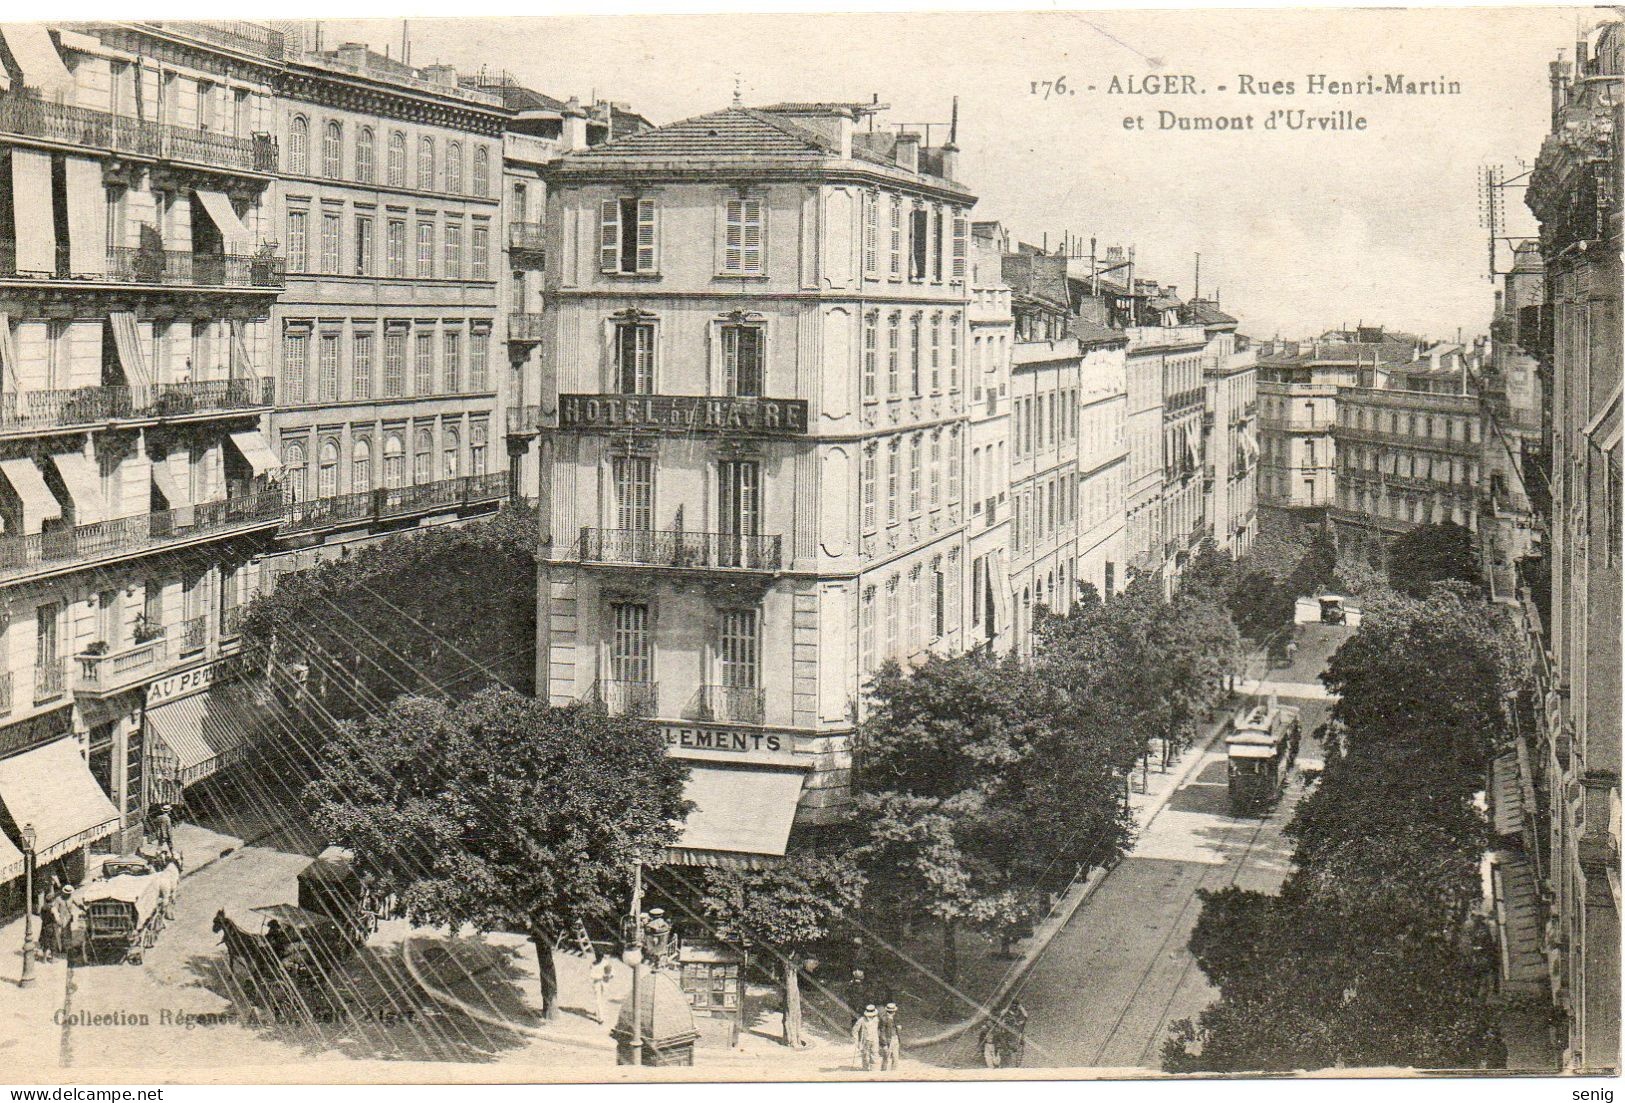 ALGERIE - ALGER - 176 - Rues Henri-Martin Et Dumont D'Urville - Collection Régence A. L. édit. Alger (Leroux) - - Algiers